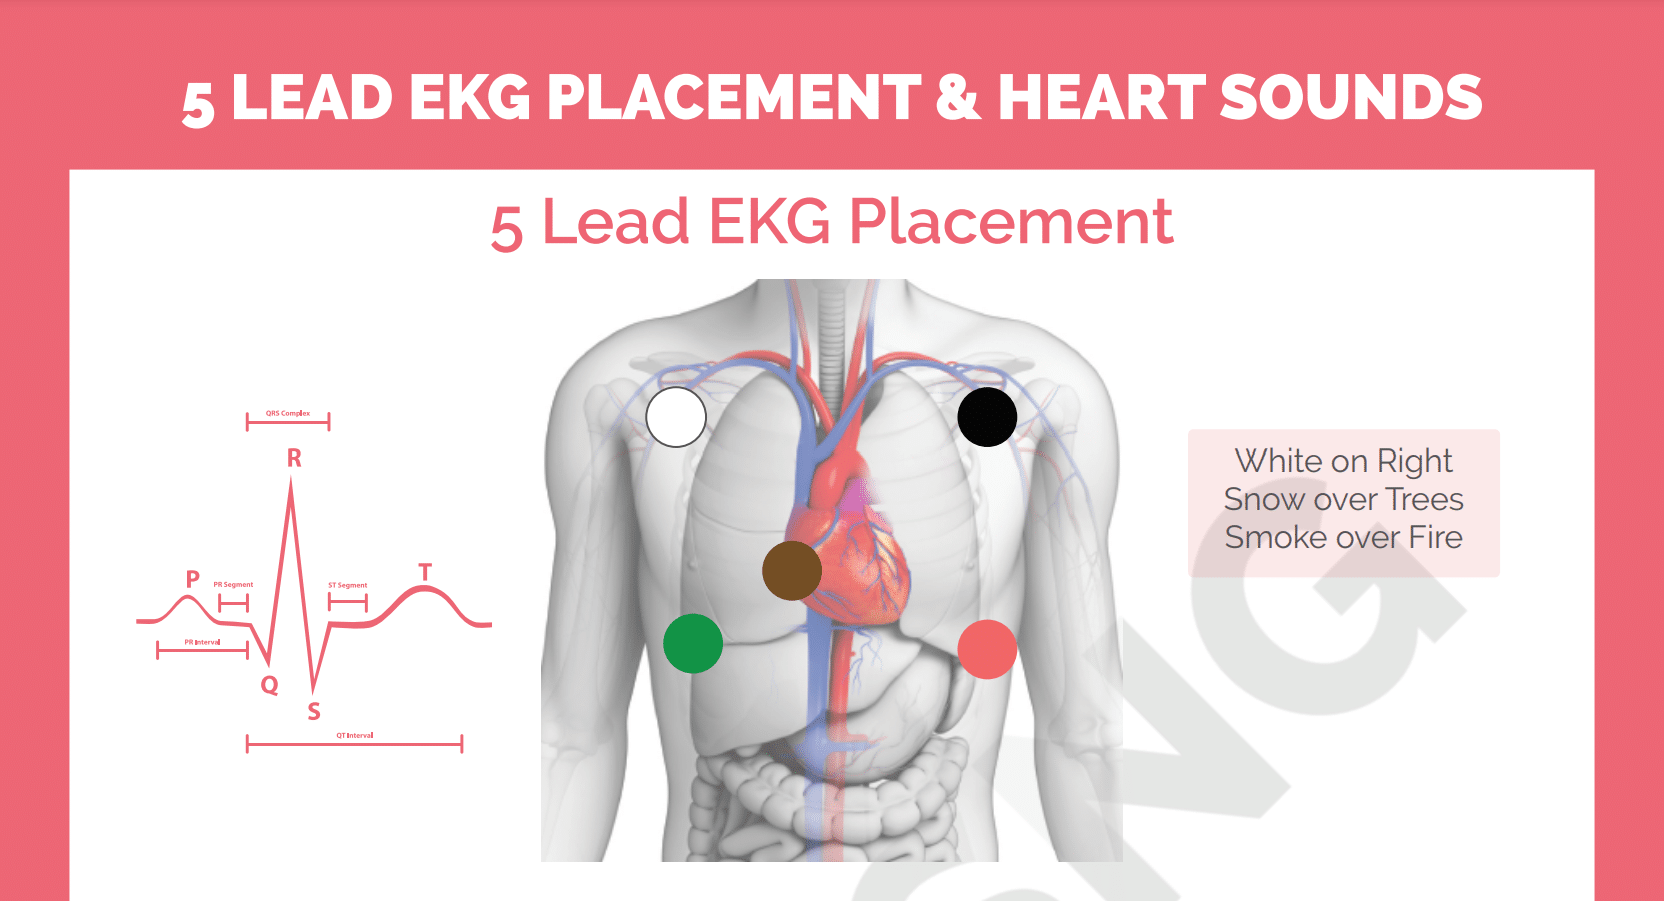 5 Lead EKG Placement